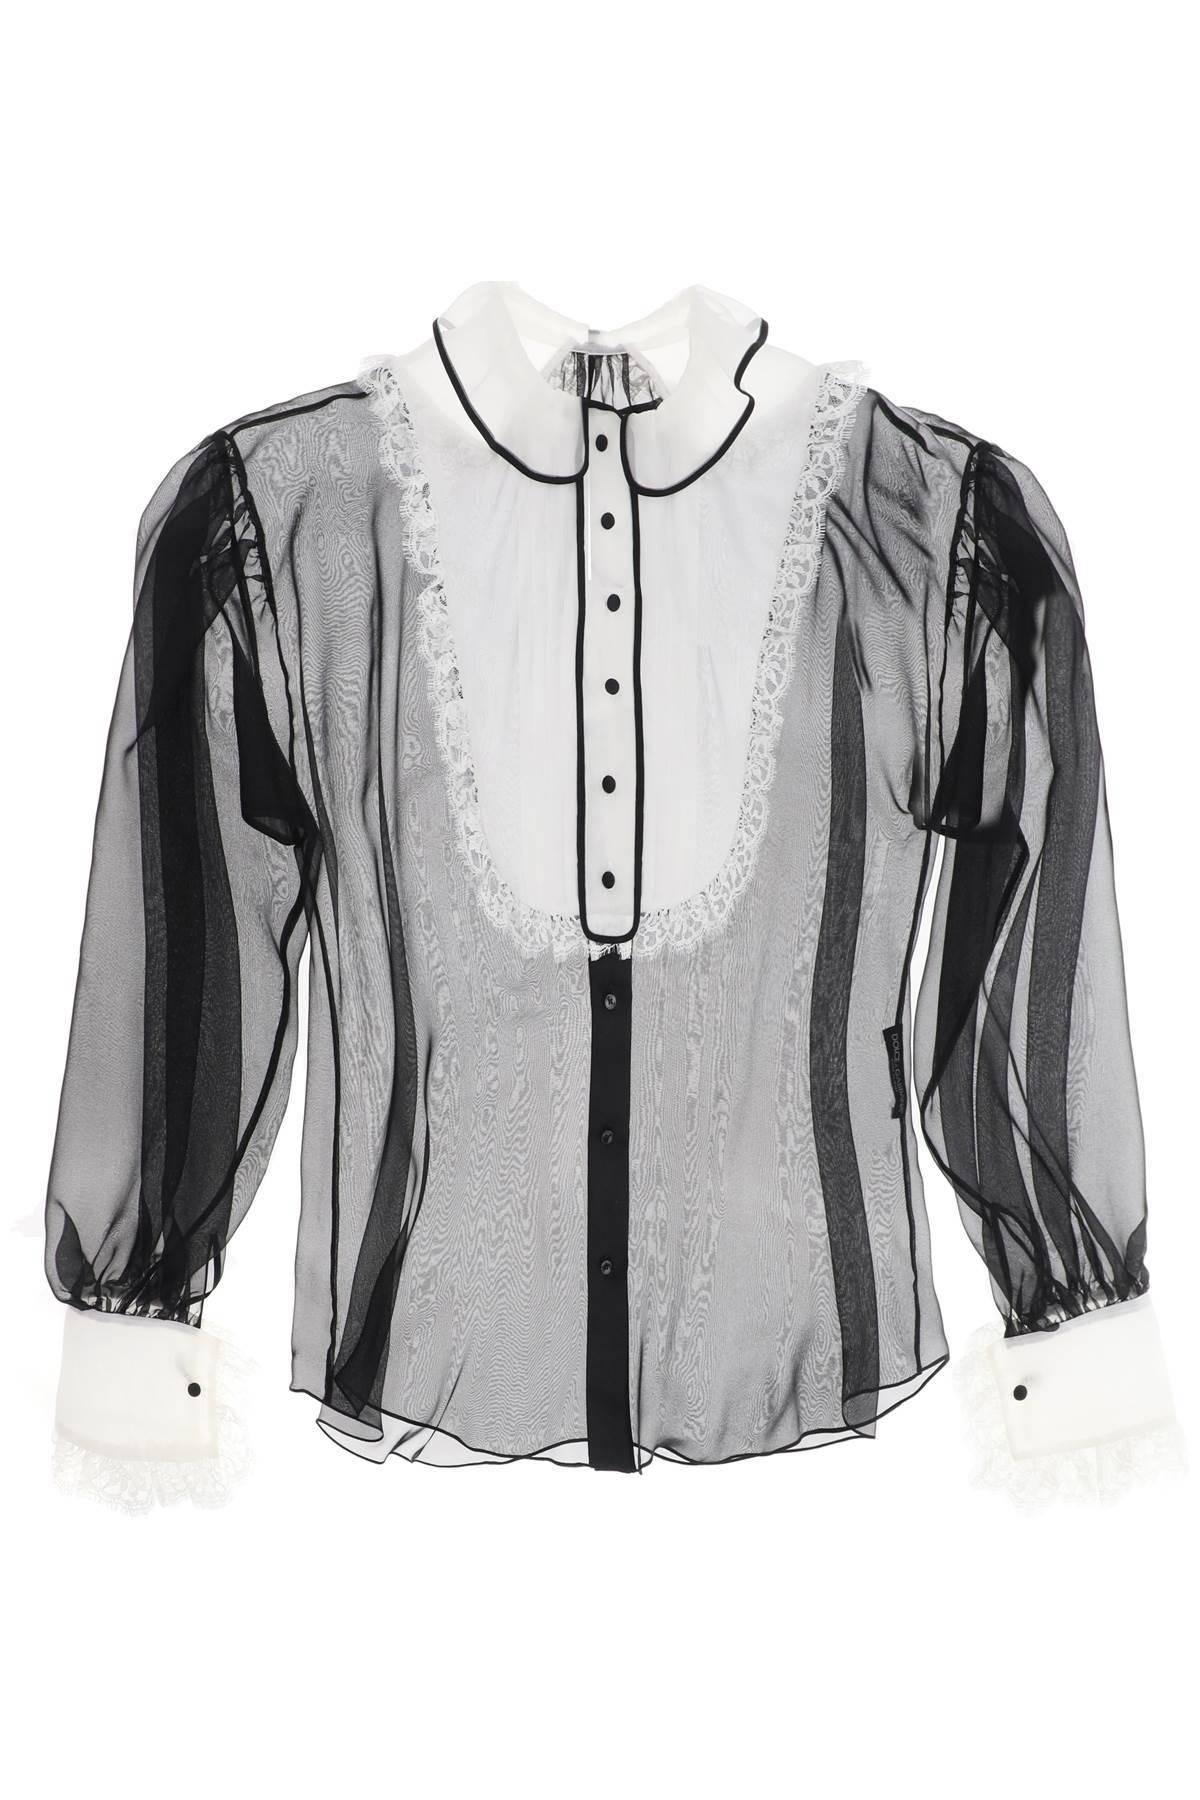 Dolce & Gabbana DOLCE & GABBANA chiffon blouse with plastr